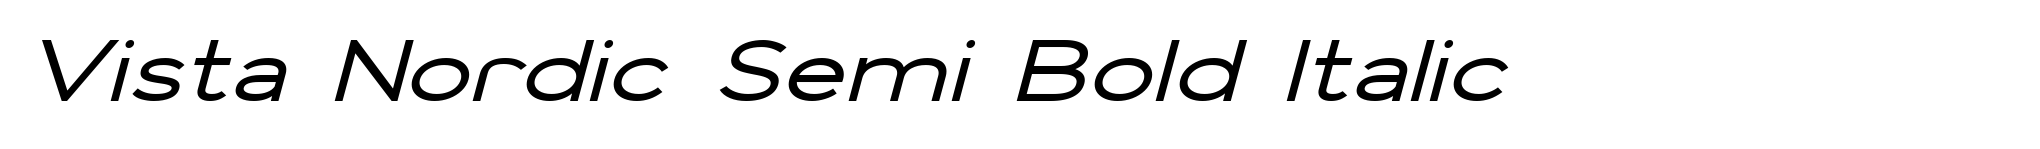 Vista Nordic Semi Bold Italic image